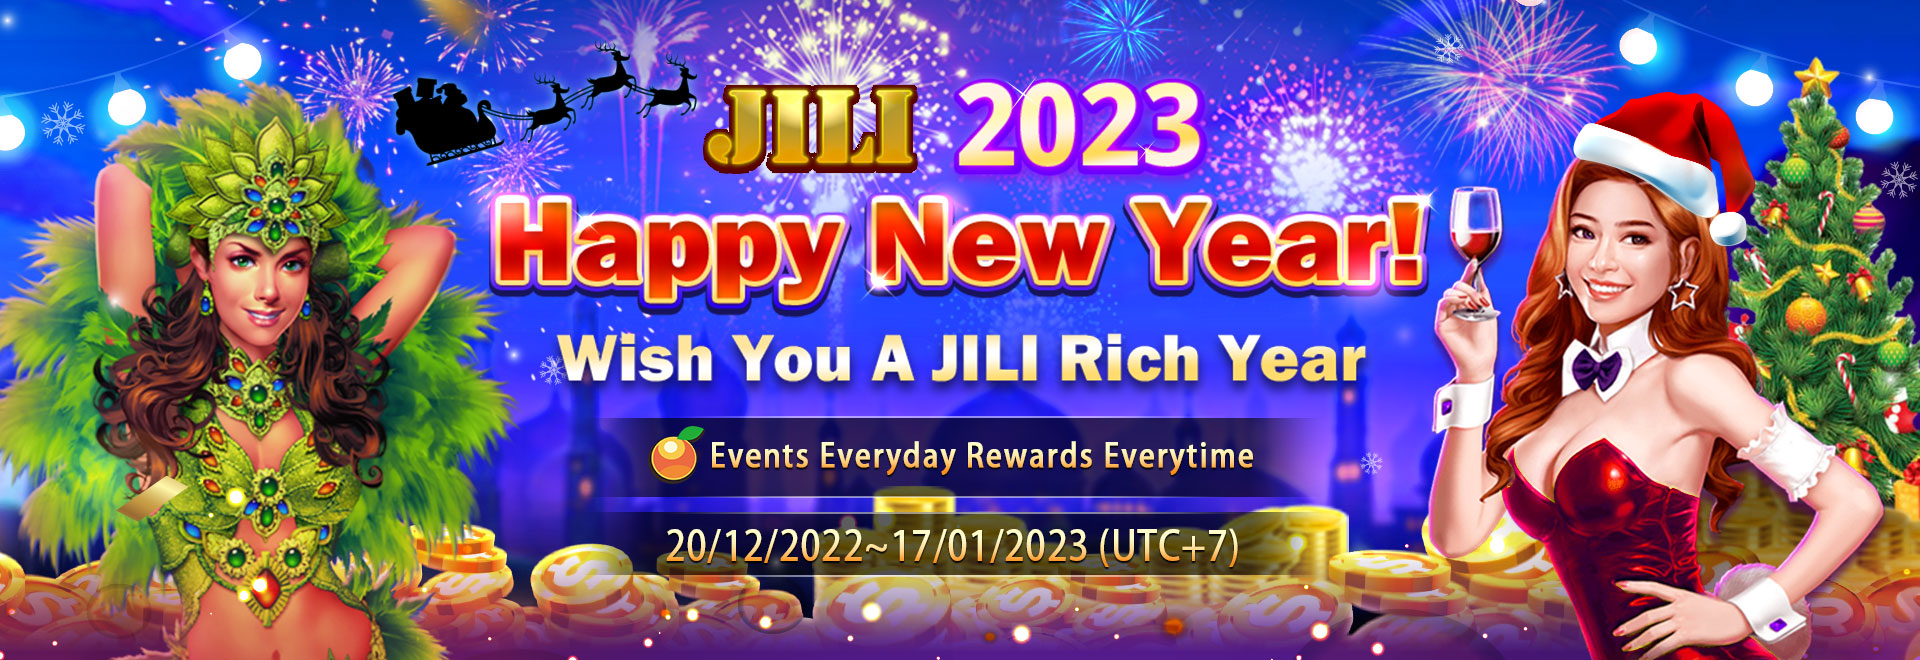 Rich9 - JILI 2023 happy new year